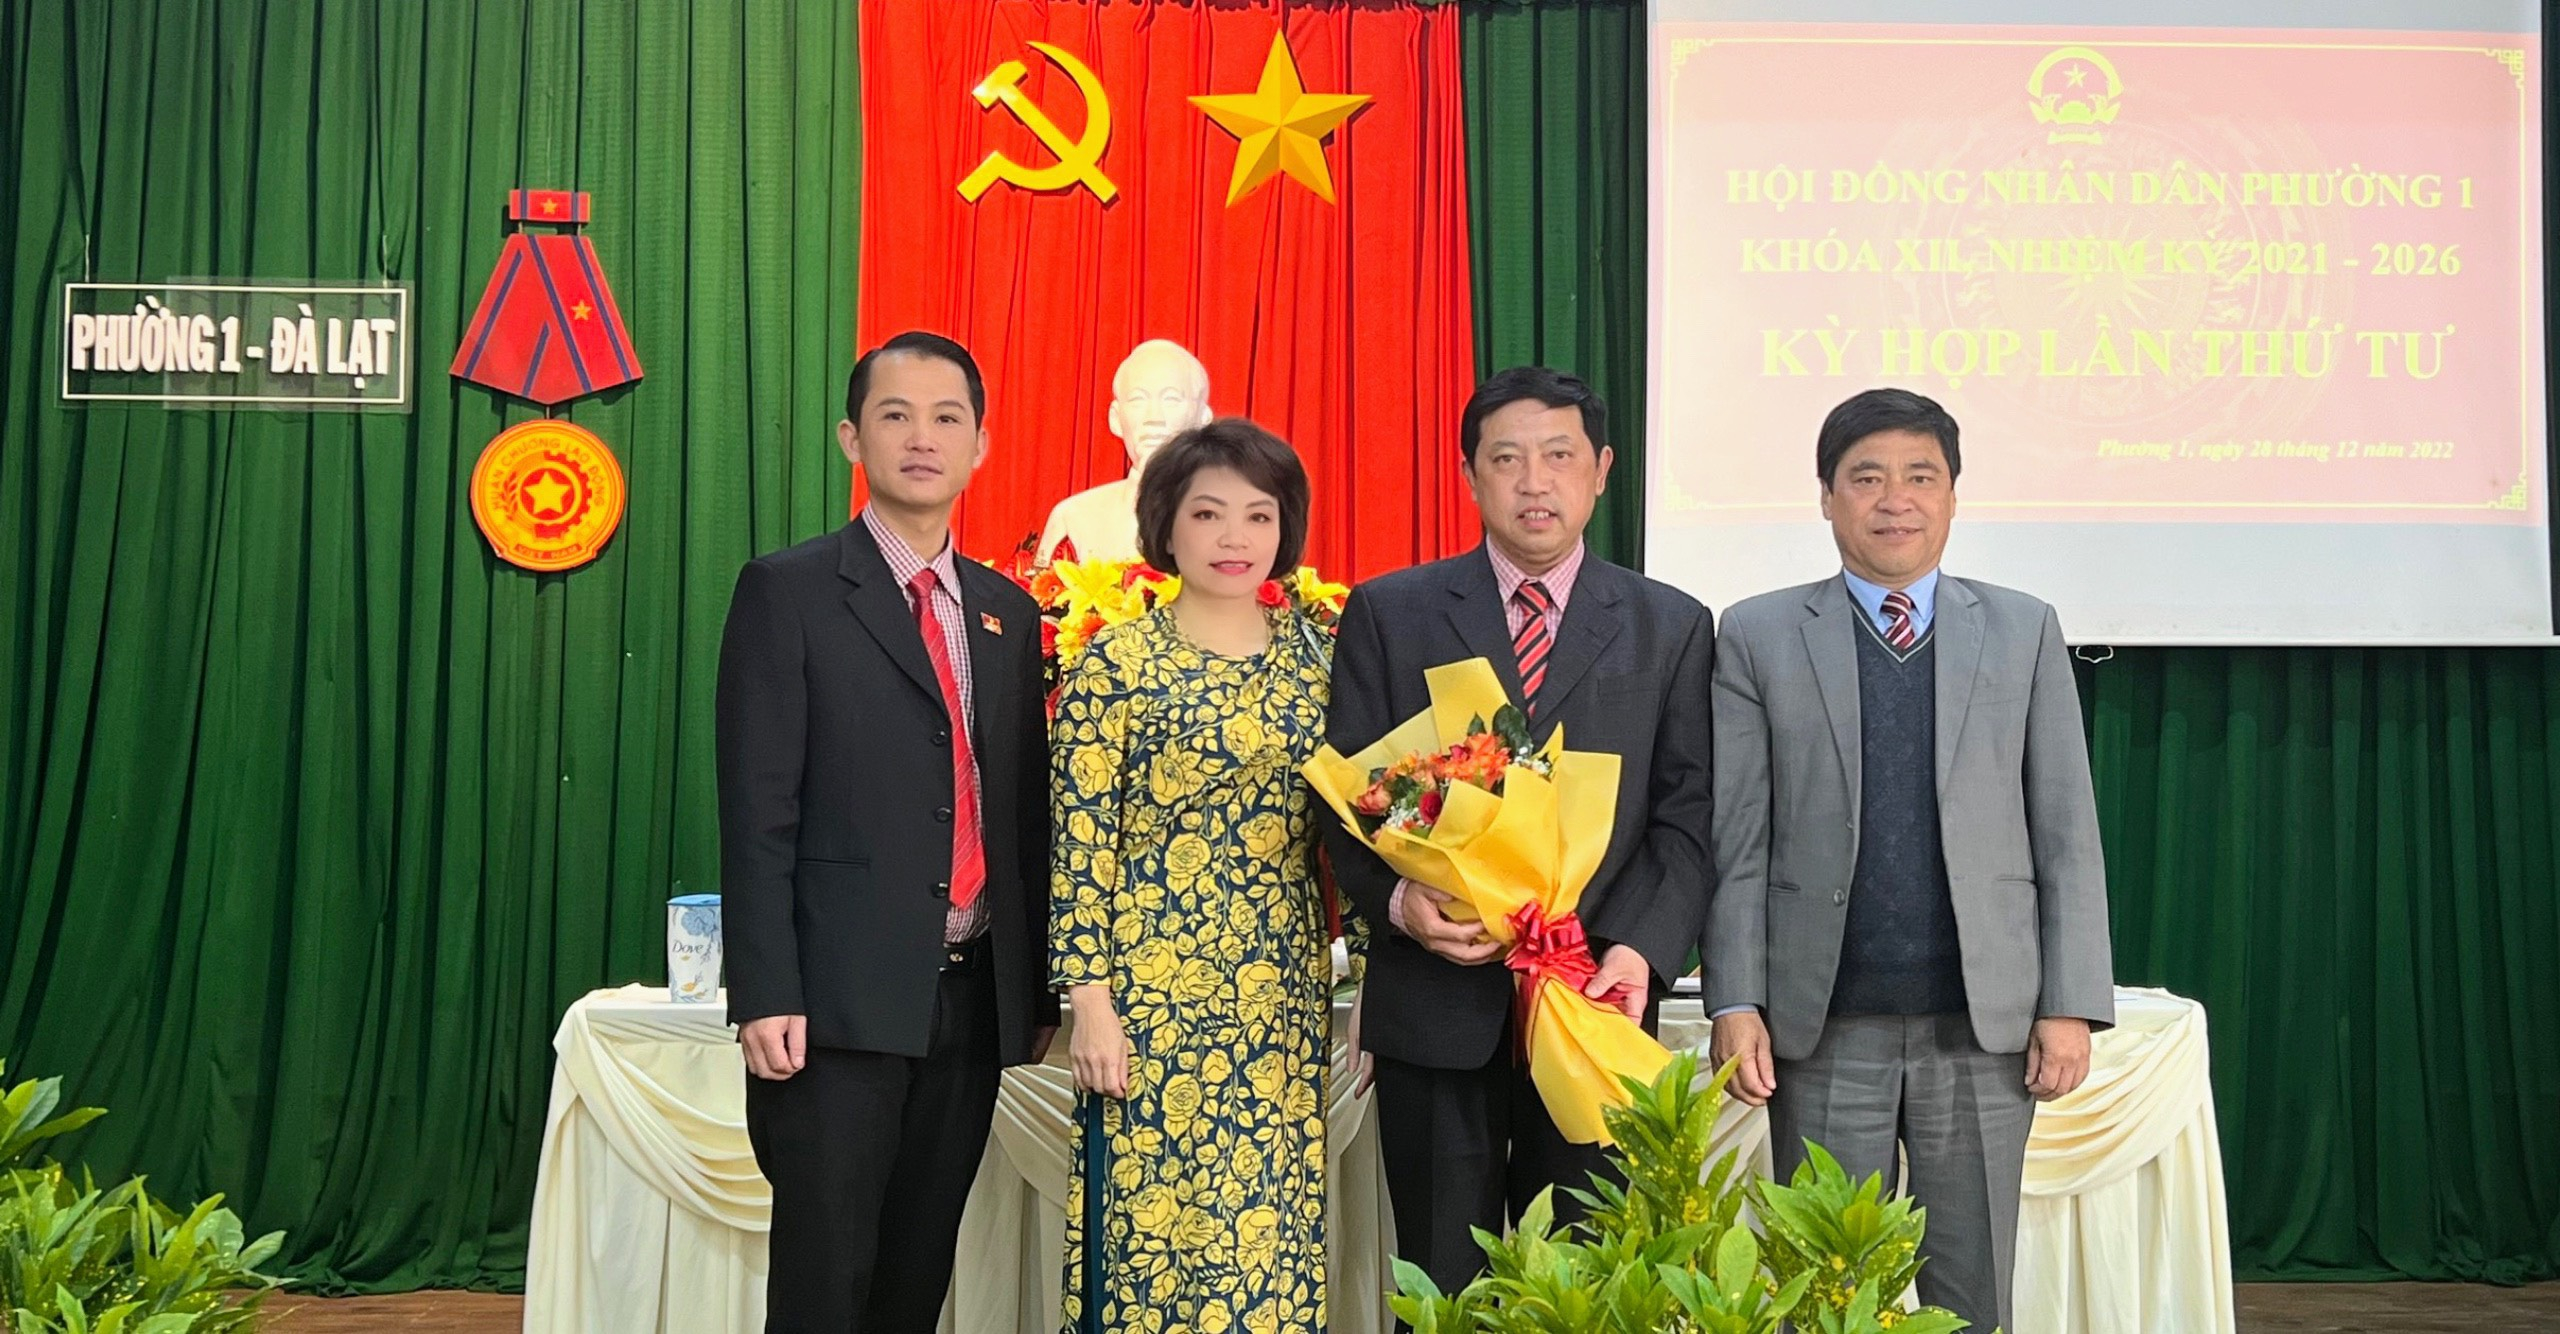 Lãnh đạo thành phố và Đảng ủy phường 1 tặng hoa chúc mừng đồng chí Nguyễn Long An (thứ 2 từ phải sang) được bầu giữ chức danh Chủ tịch UBND phường 1